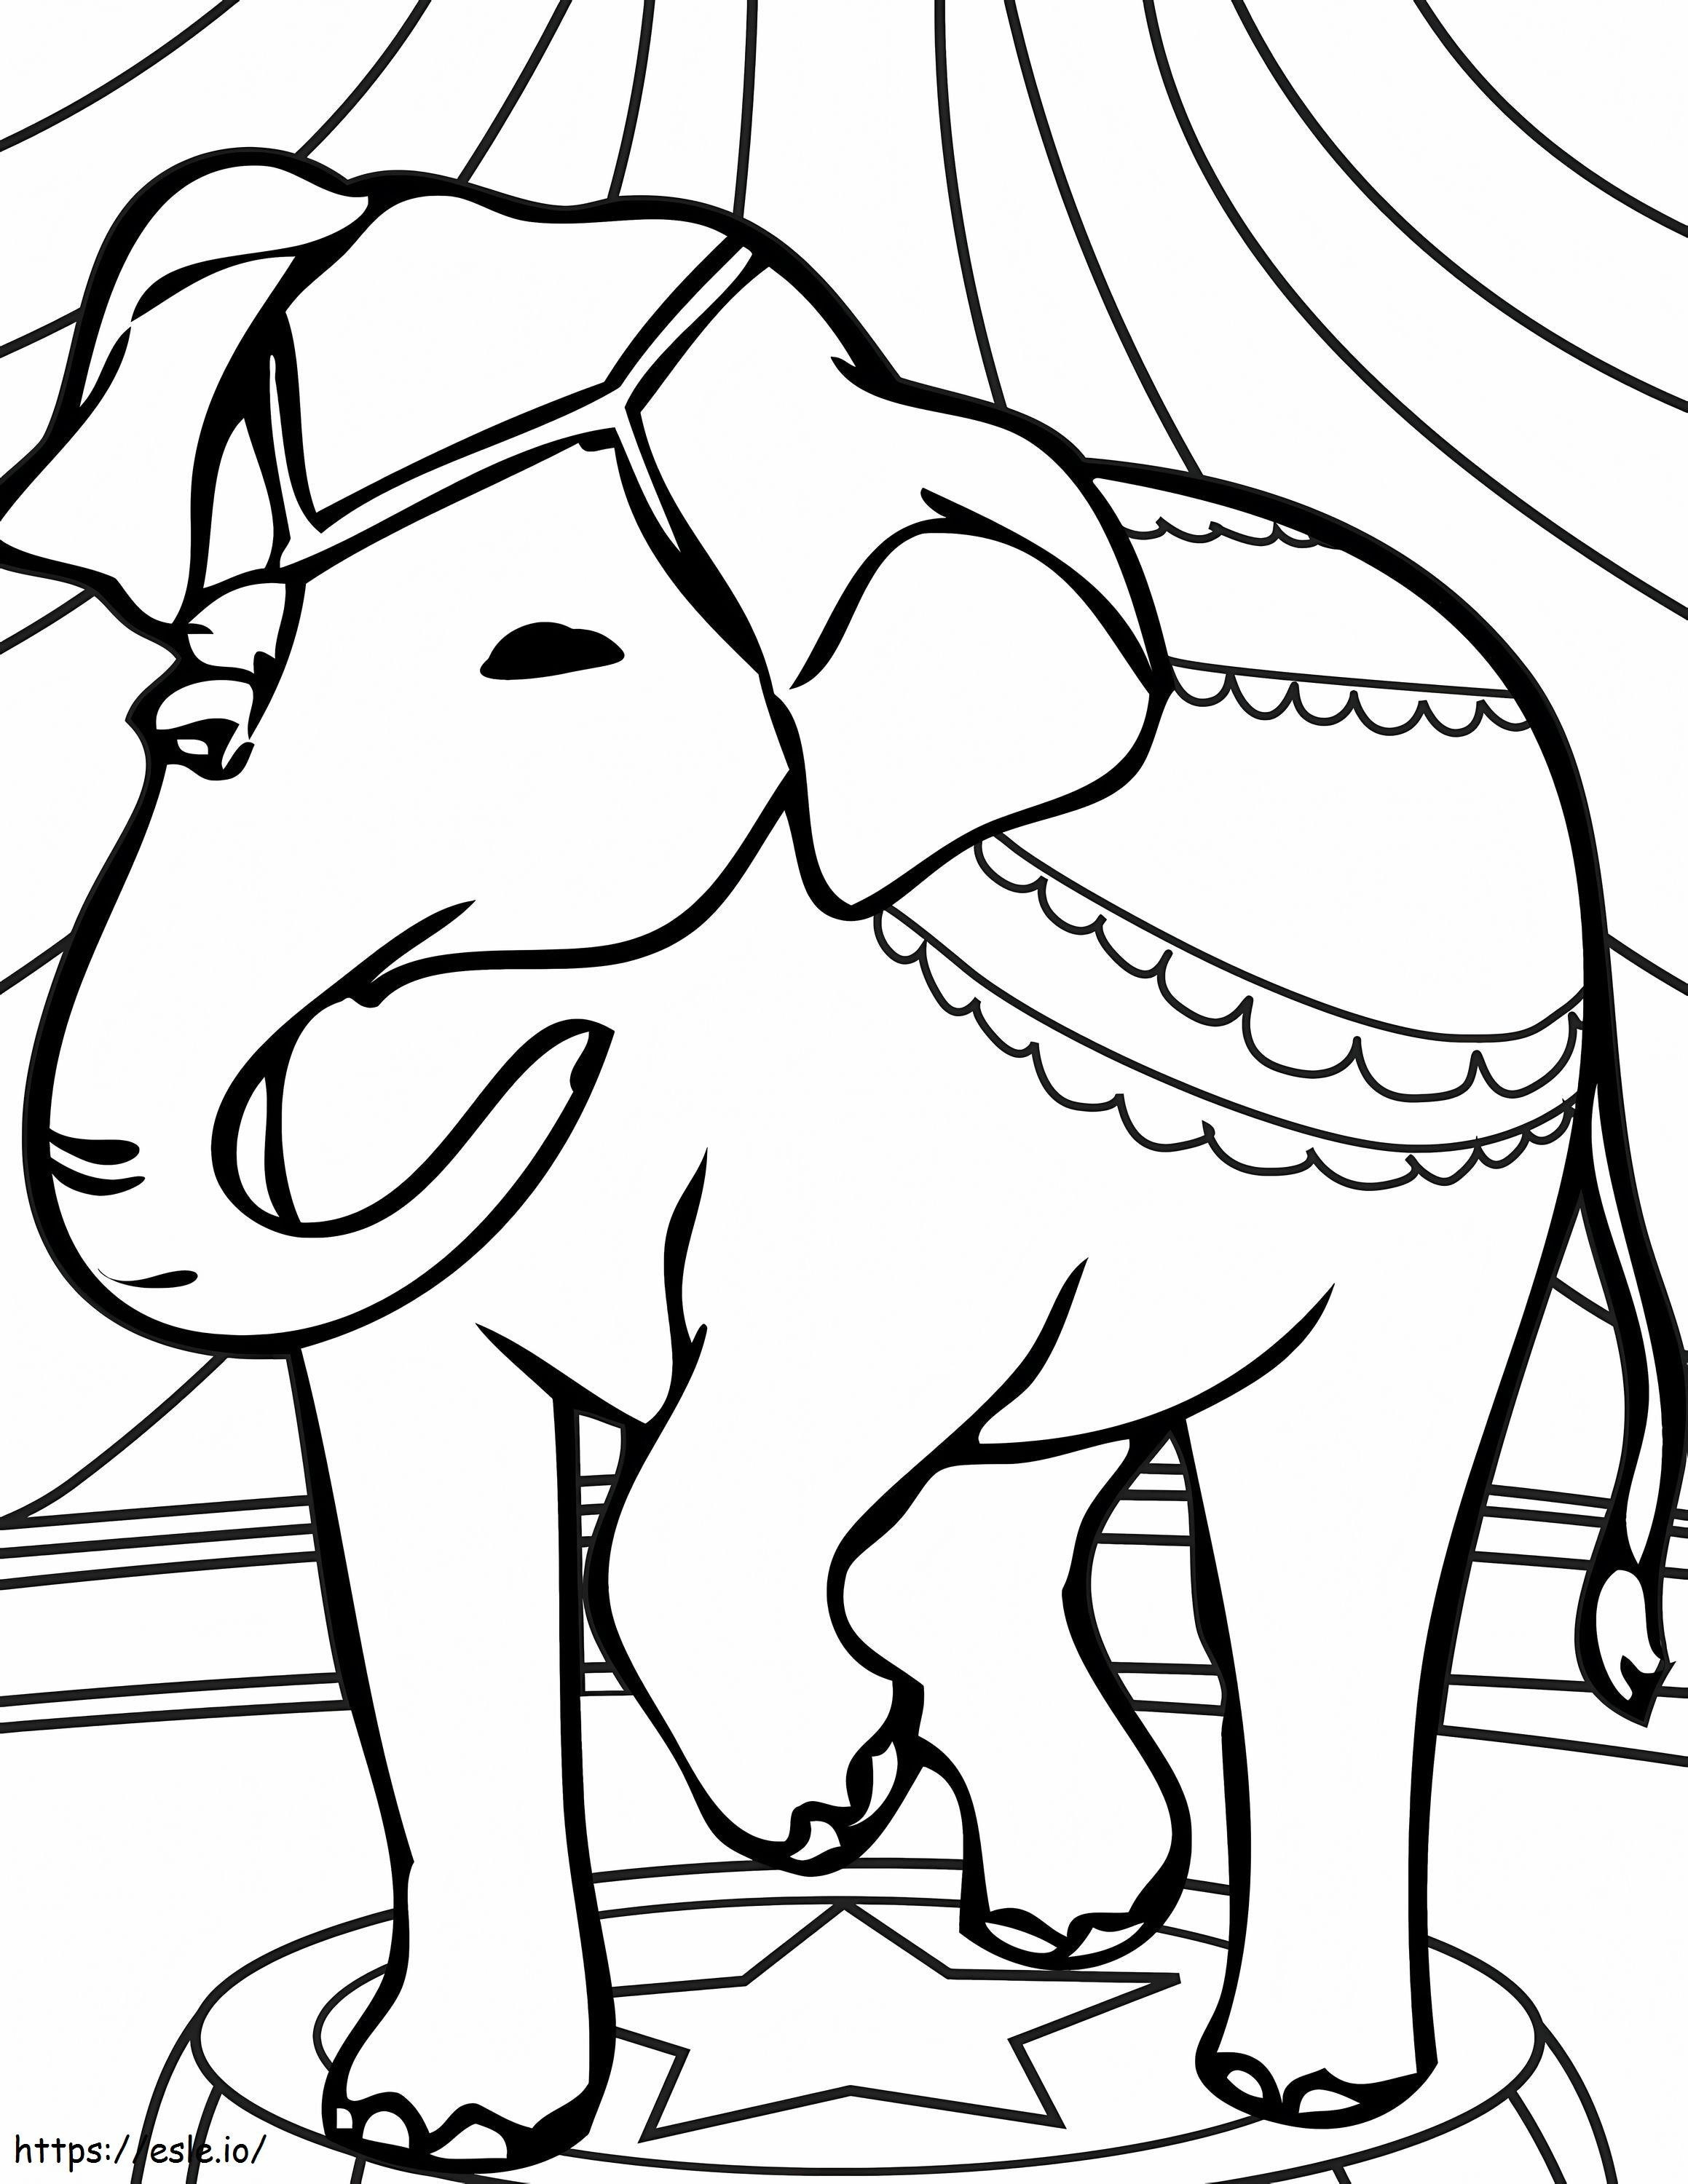 1548128776 Olifant van olifant afdrukbaar kleurplaat kleurplaat